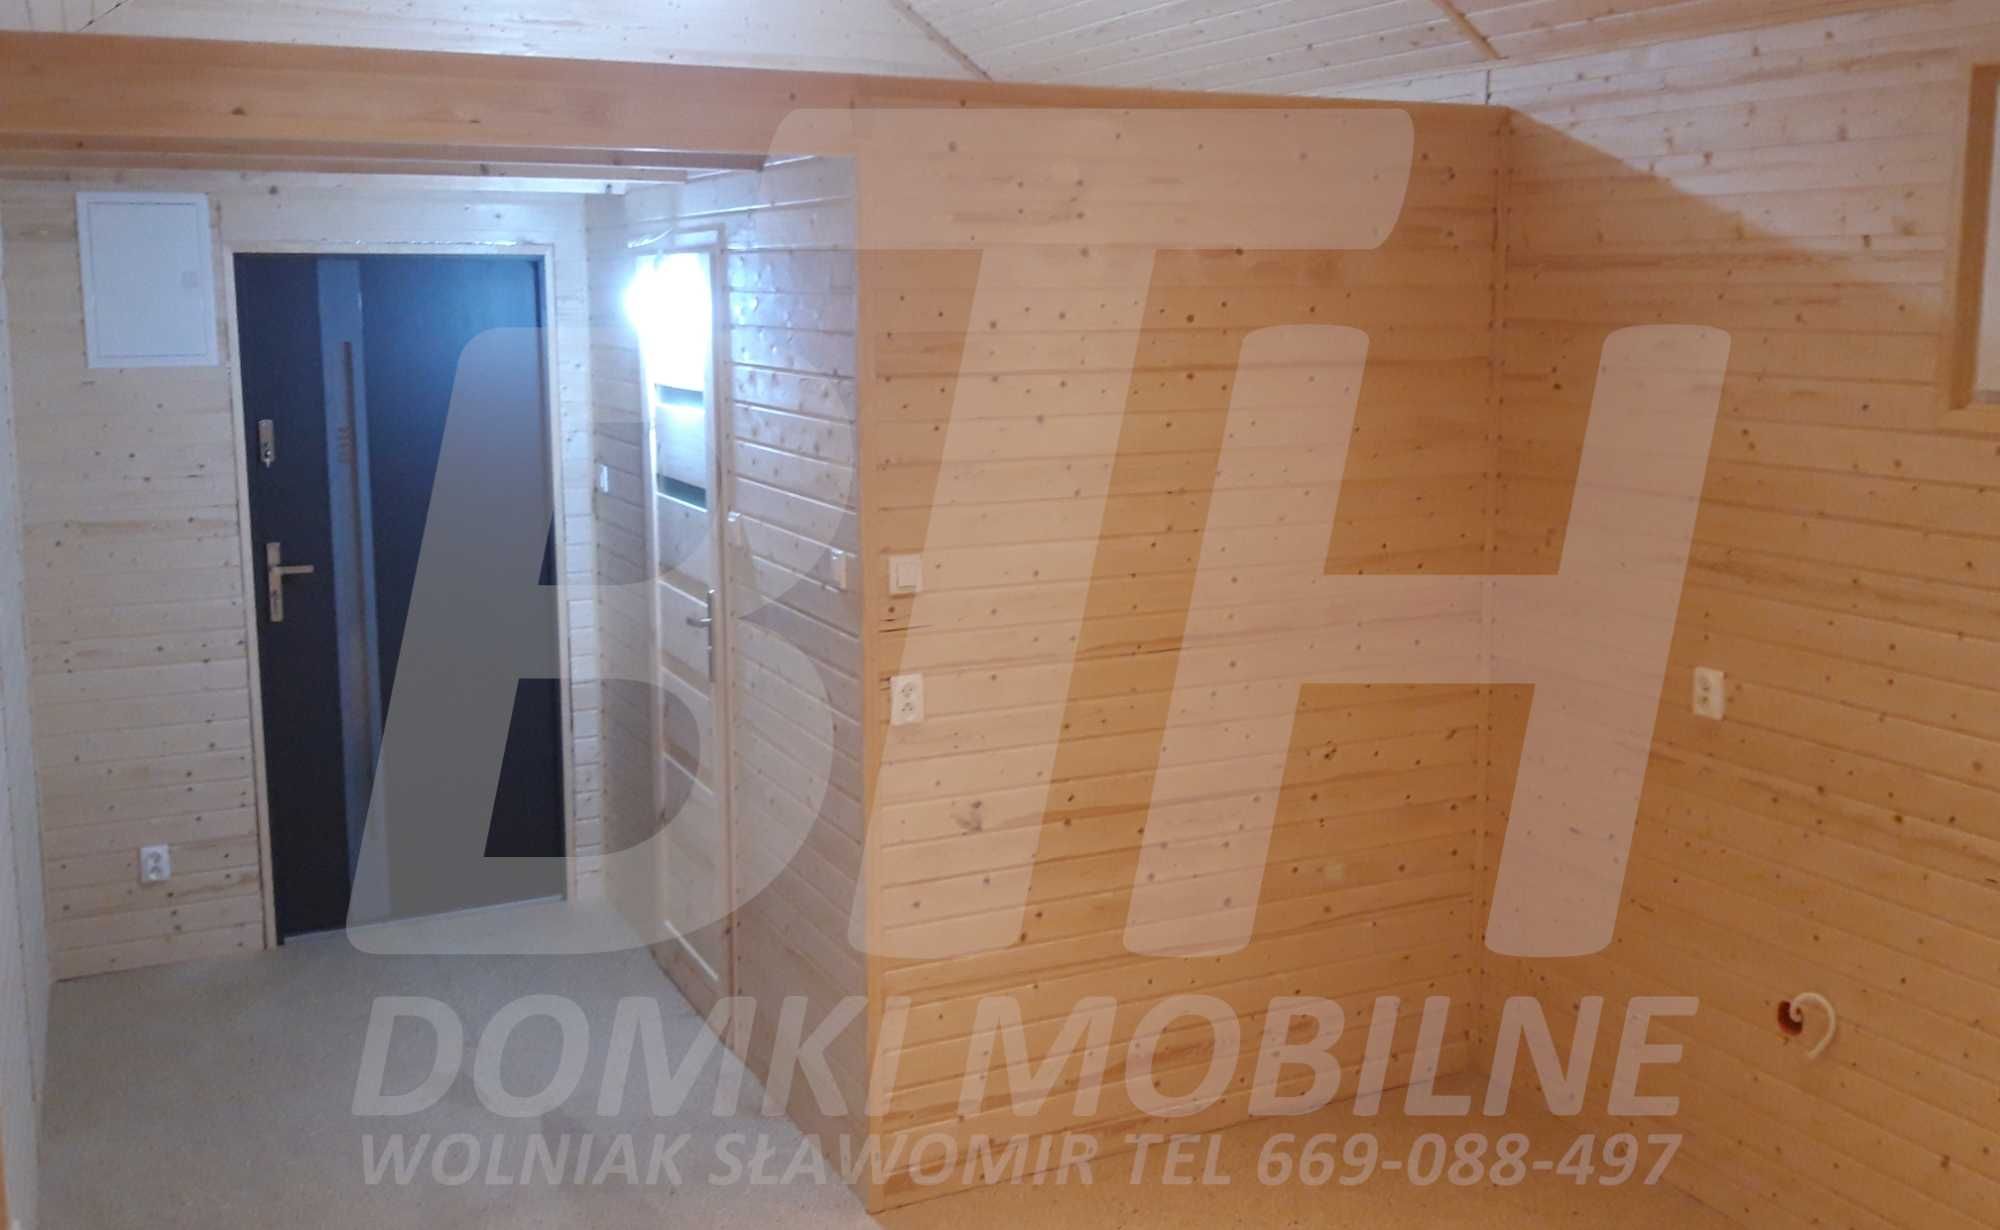 Domek Mobilny 35m²+8,7m² Antresola, Indywidualne Zamówienie BT-House